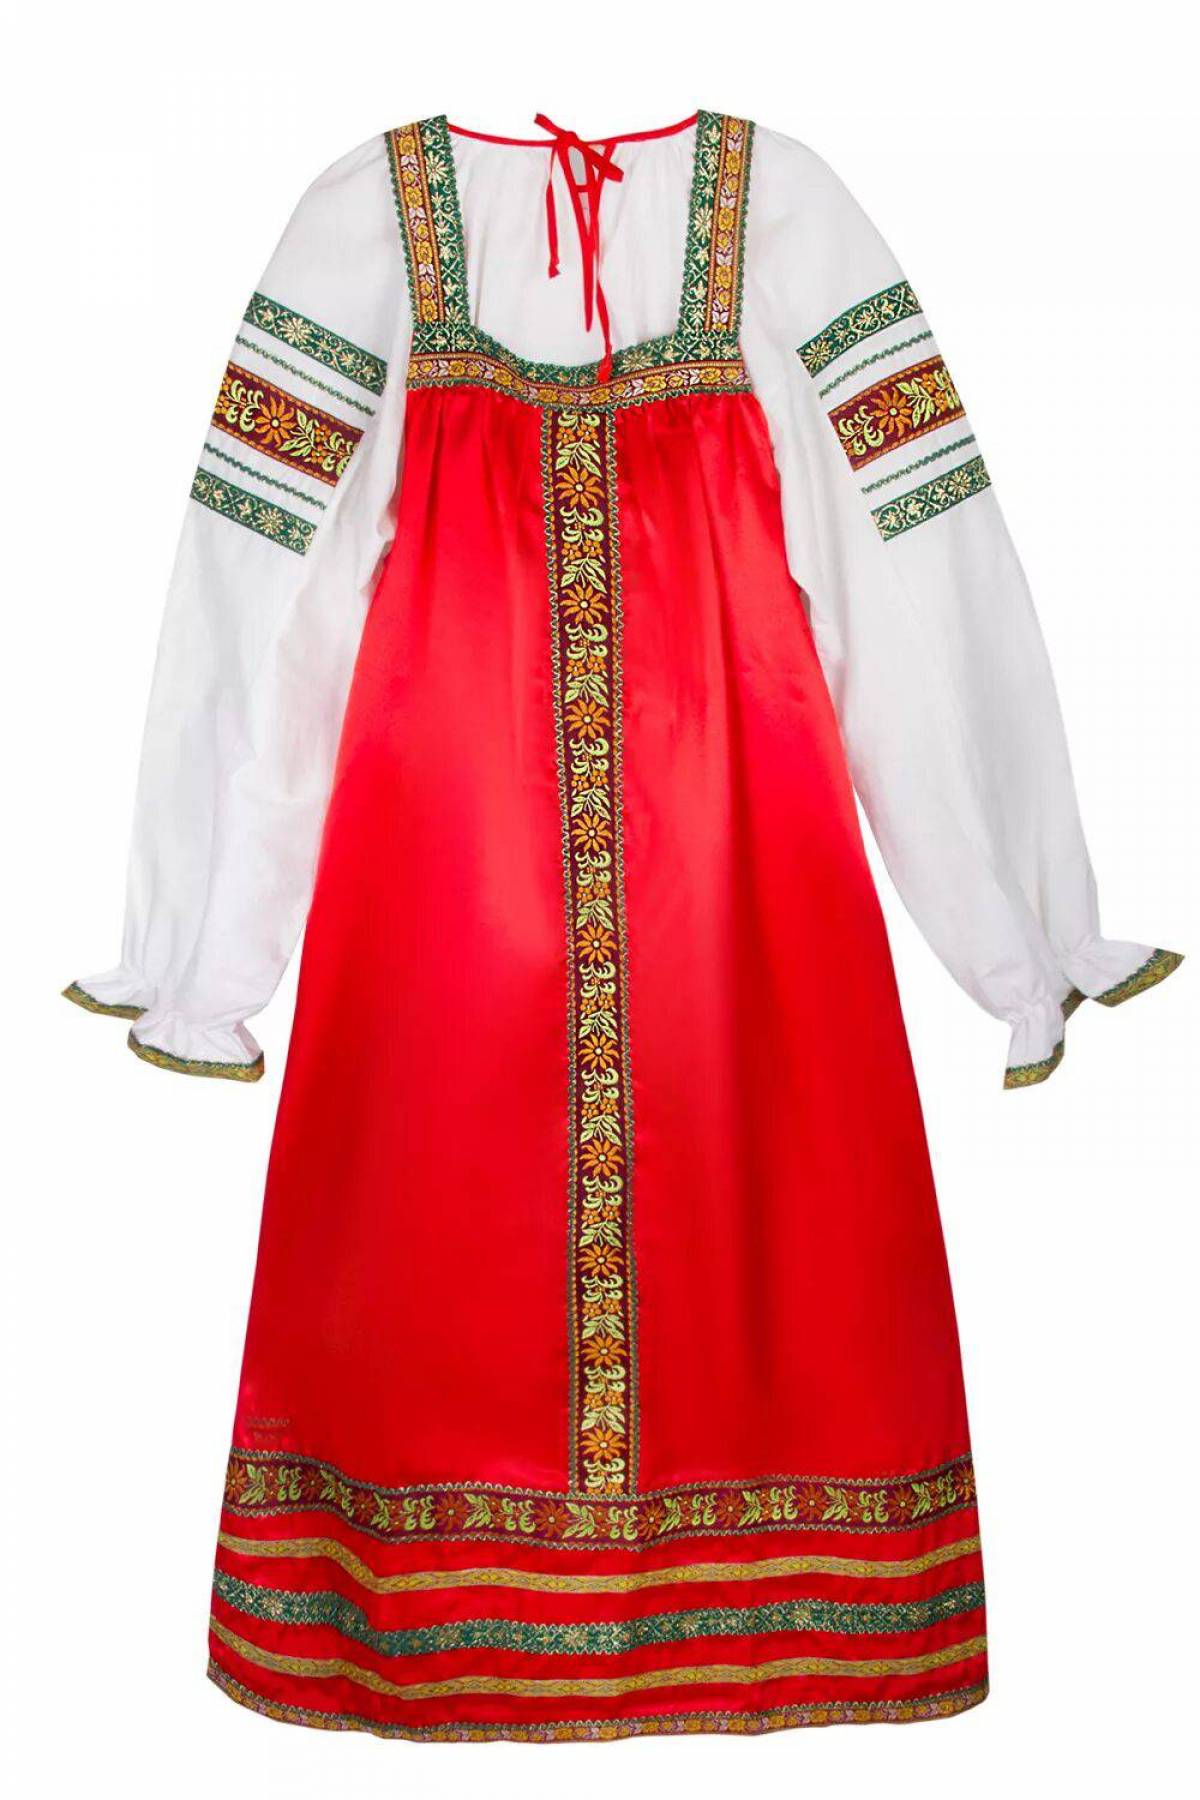 Женский народный костюм русский #31